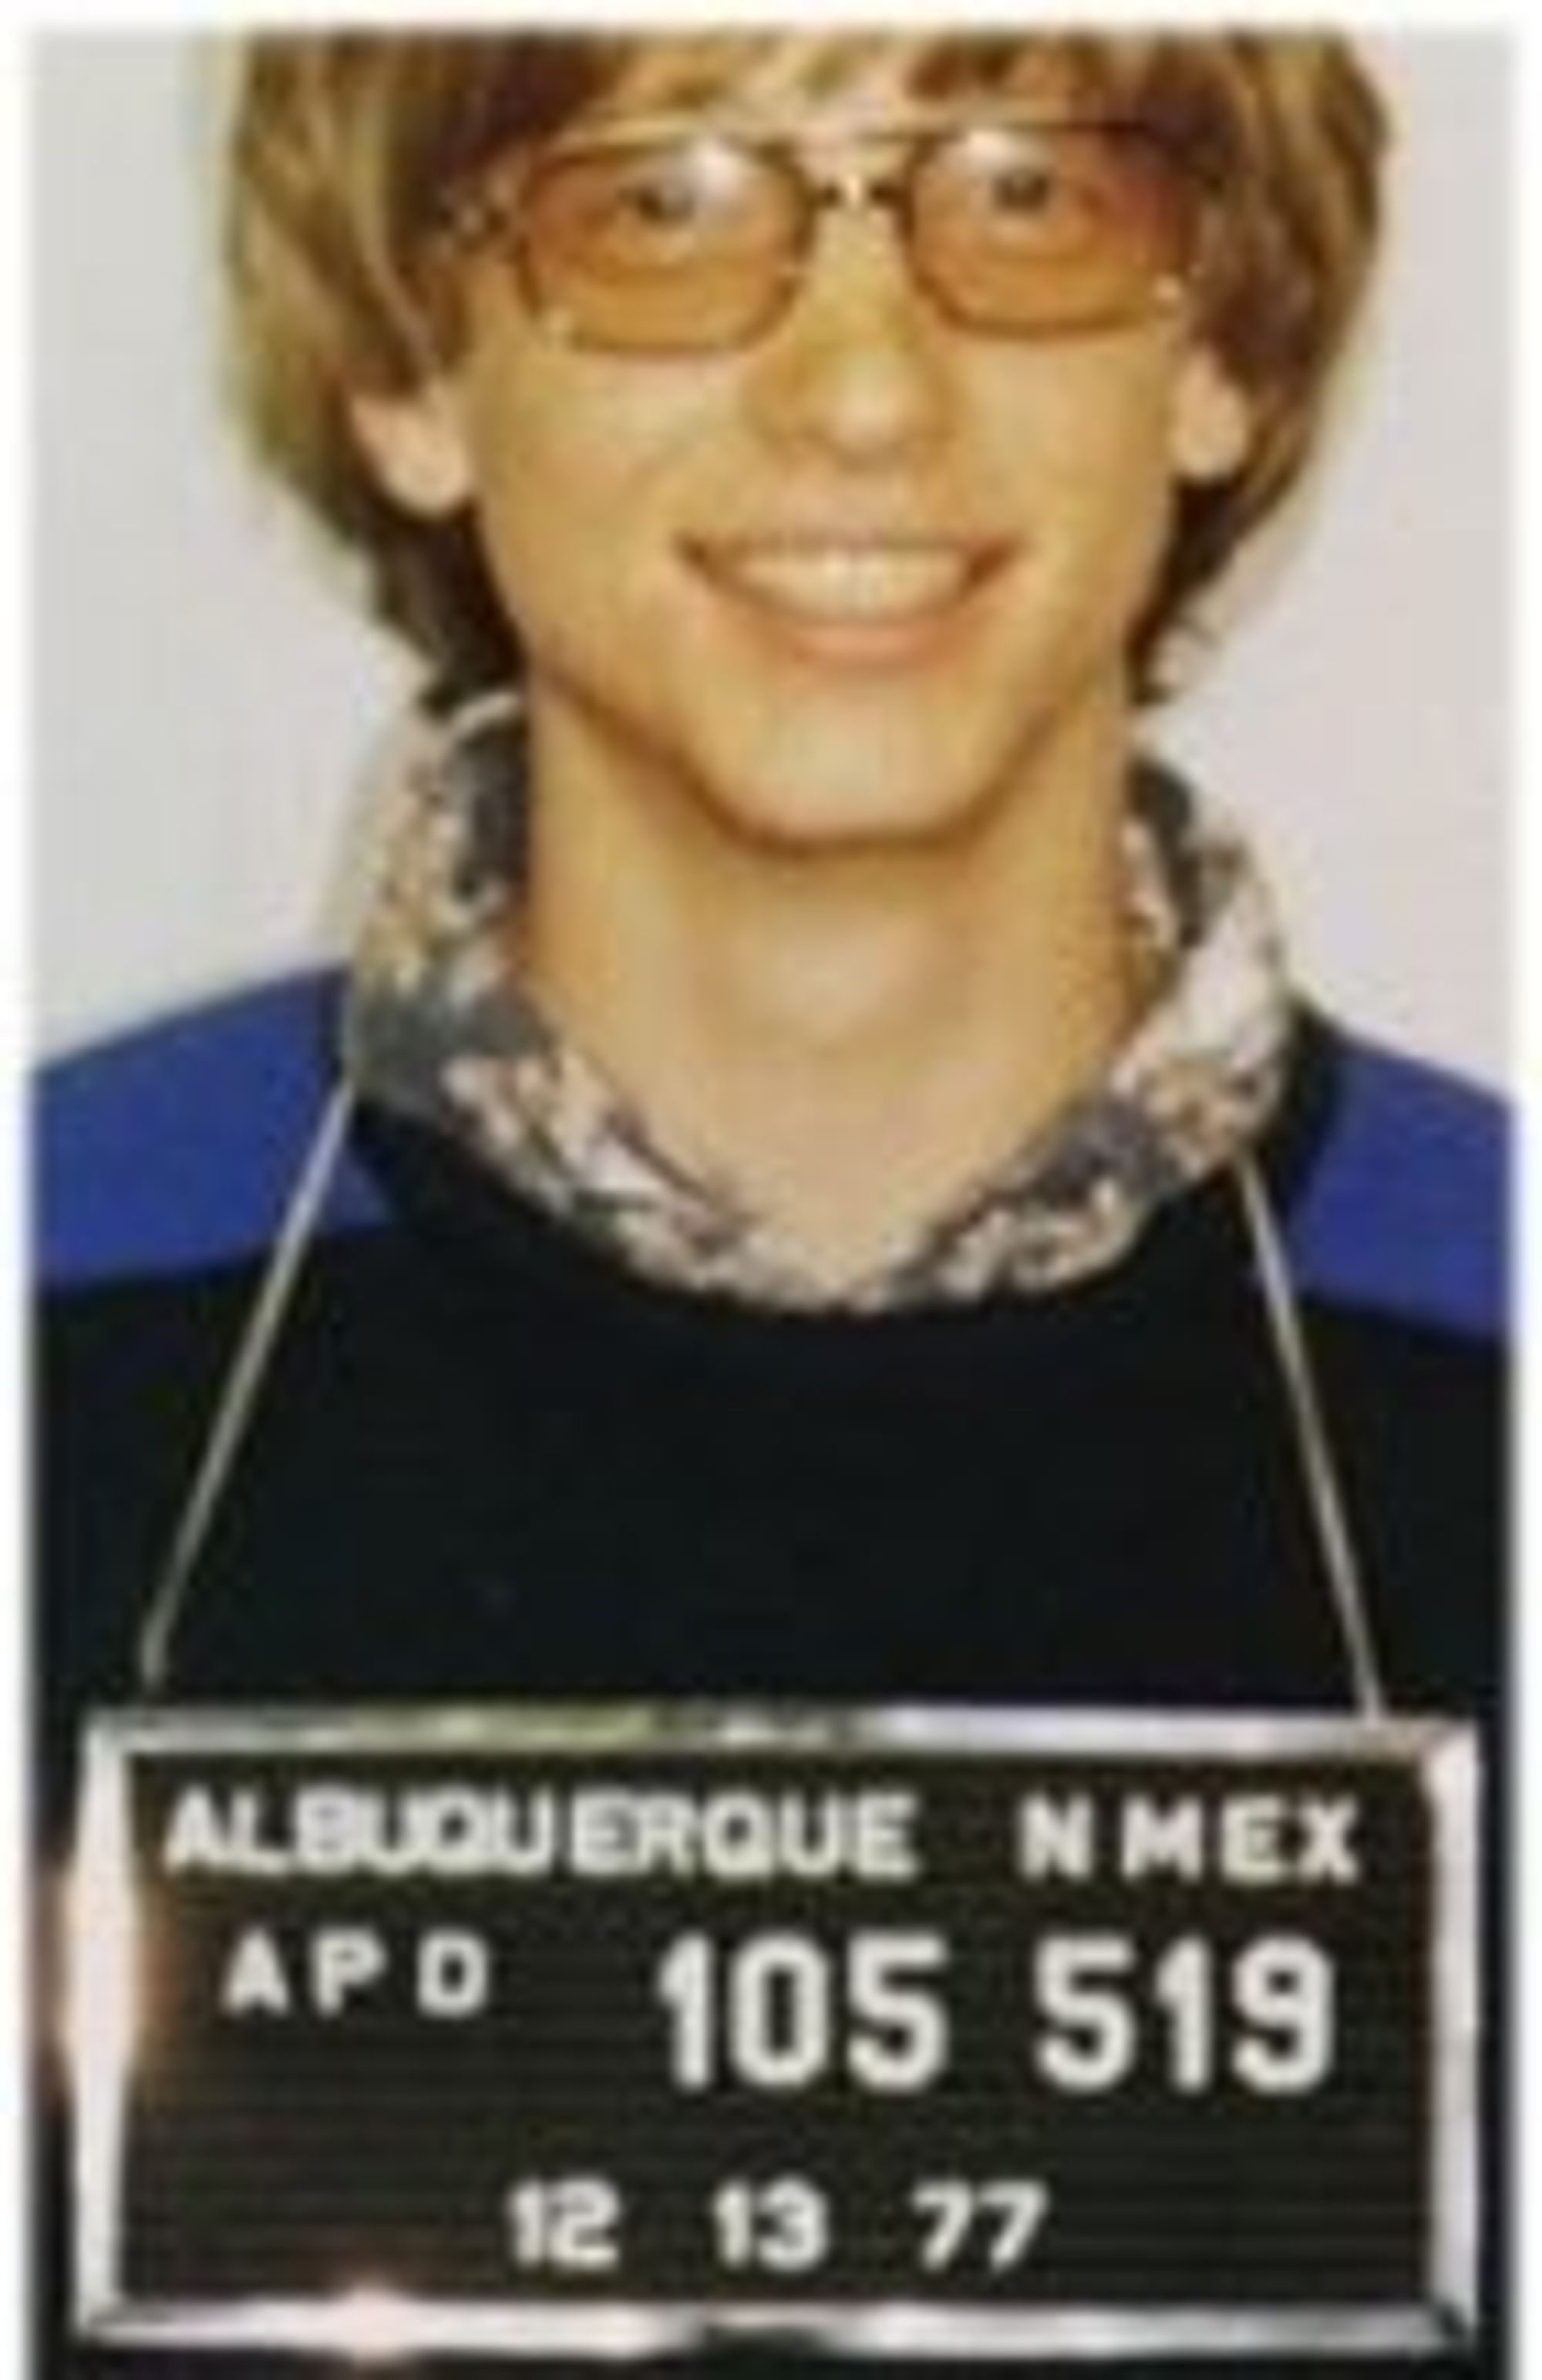 I mai 1977 ble Gates arrestert i New Mexico etter et trafikkuhell etter sigende forårsaket av høy fart. Dette bildet skal være autentisk.